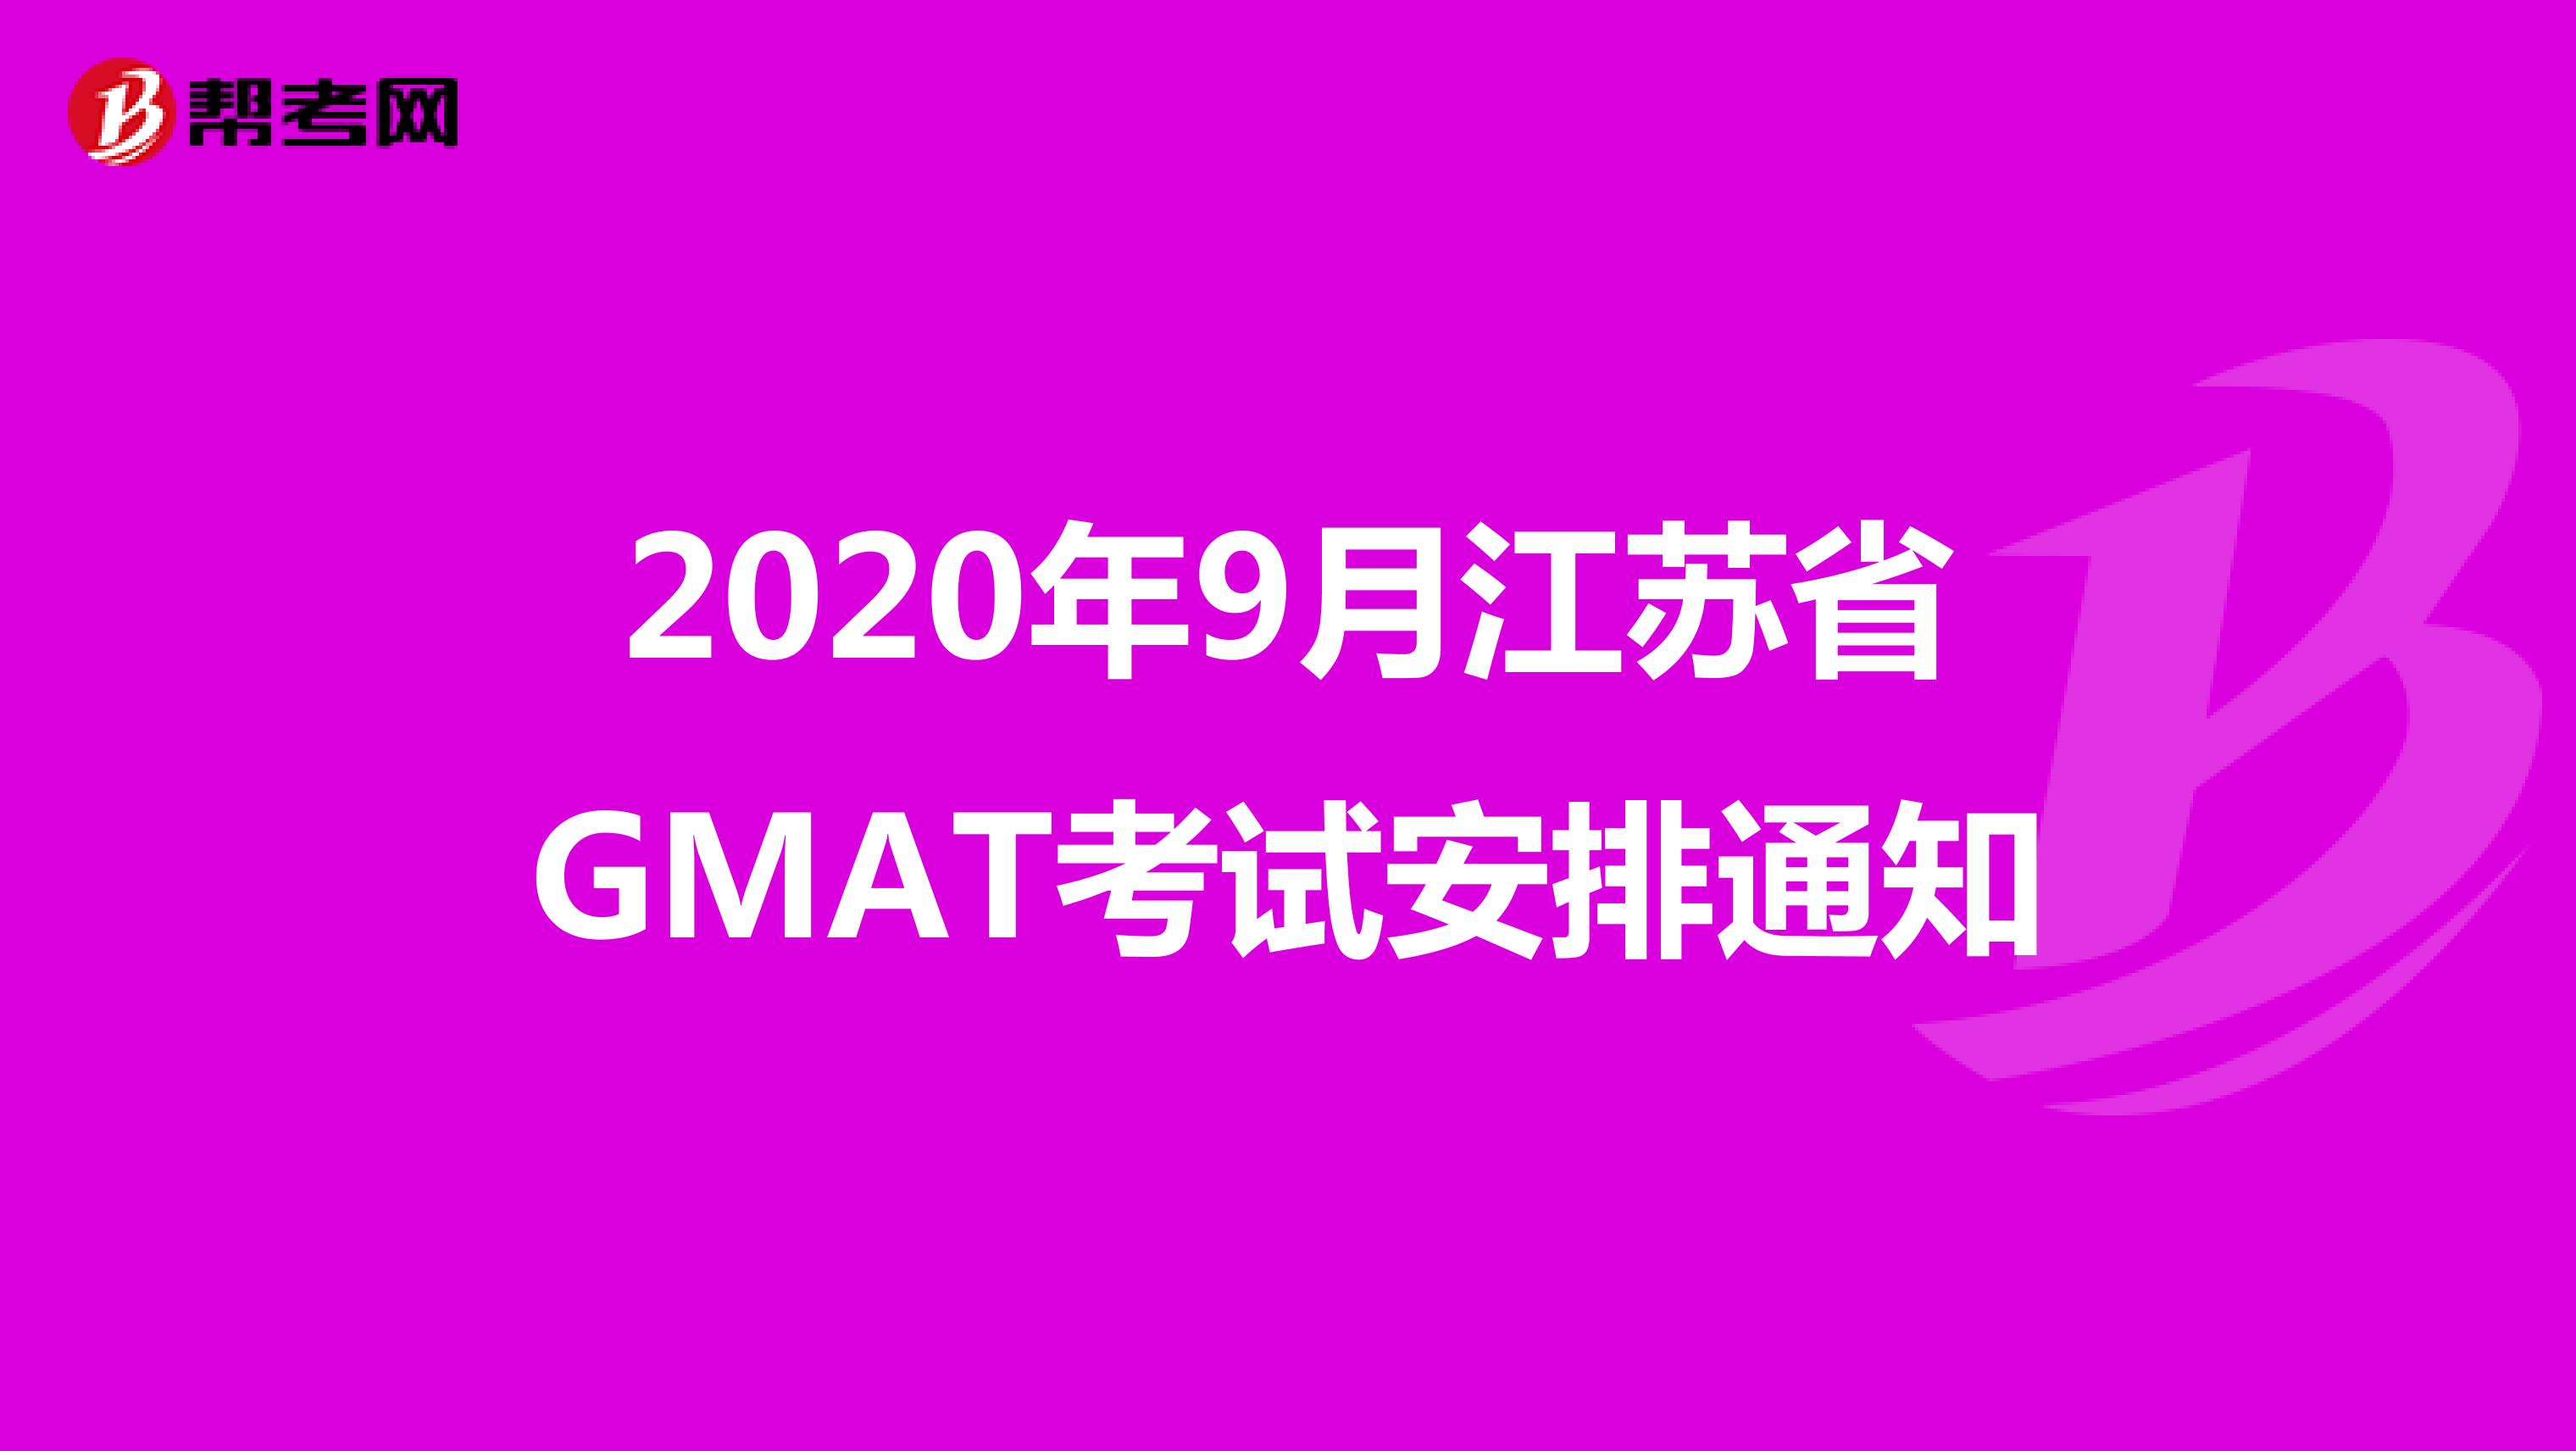 2020年9月江苏省GMAT考试安排通知